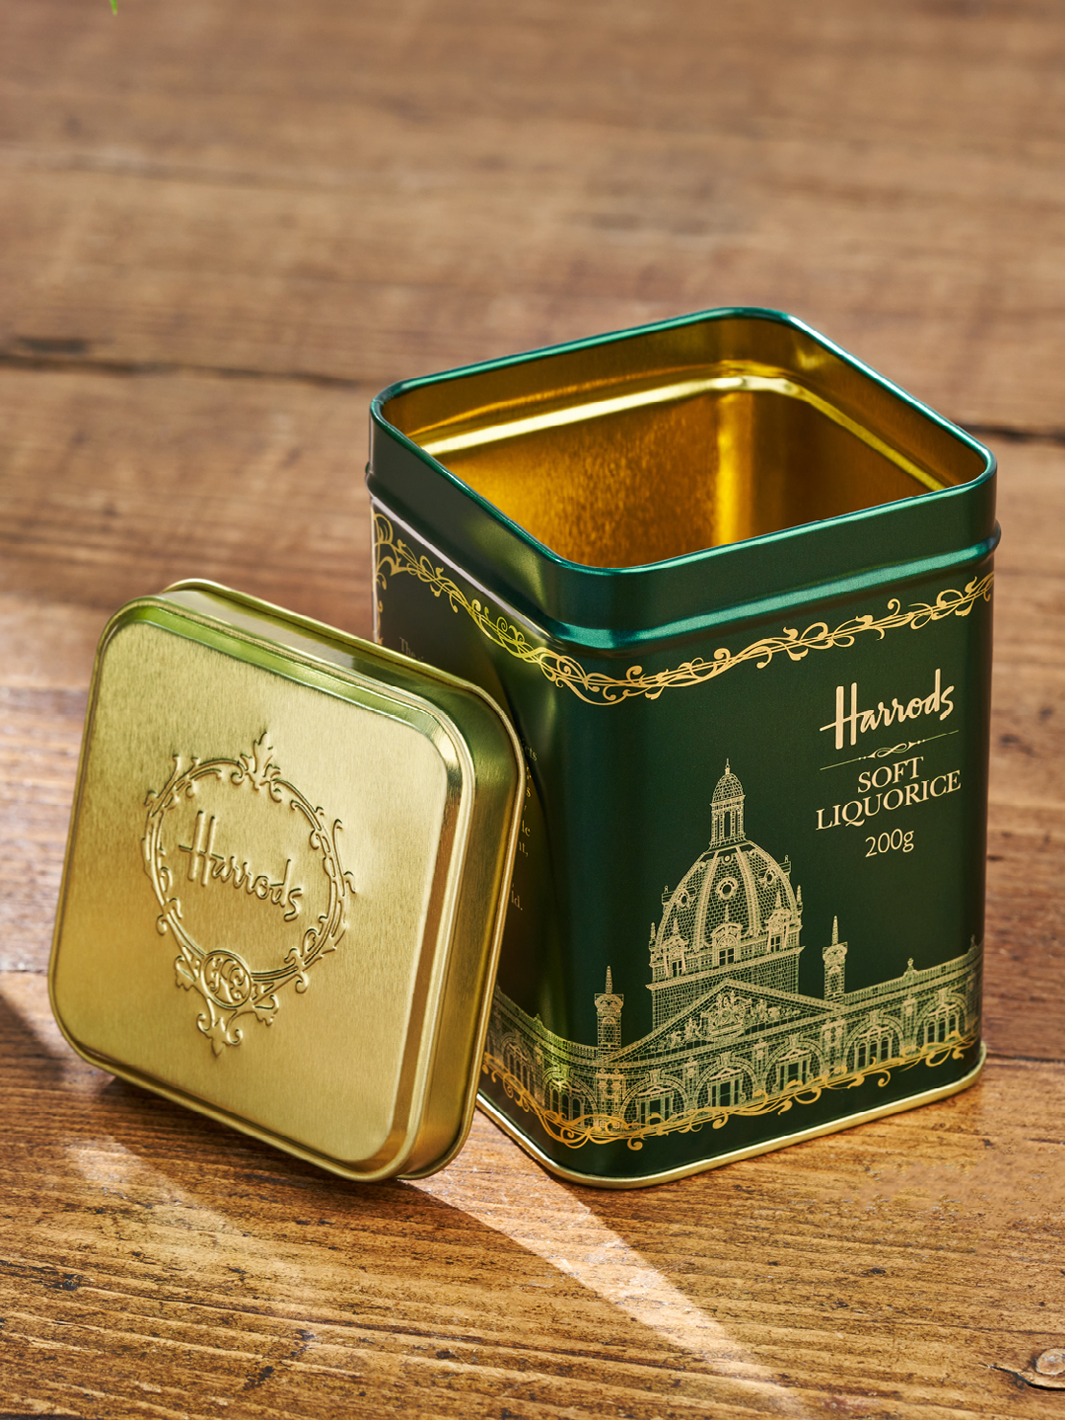 Una confezione in metallo verde di dolci per Harrods. L'oro è inciso nel metallo verde.